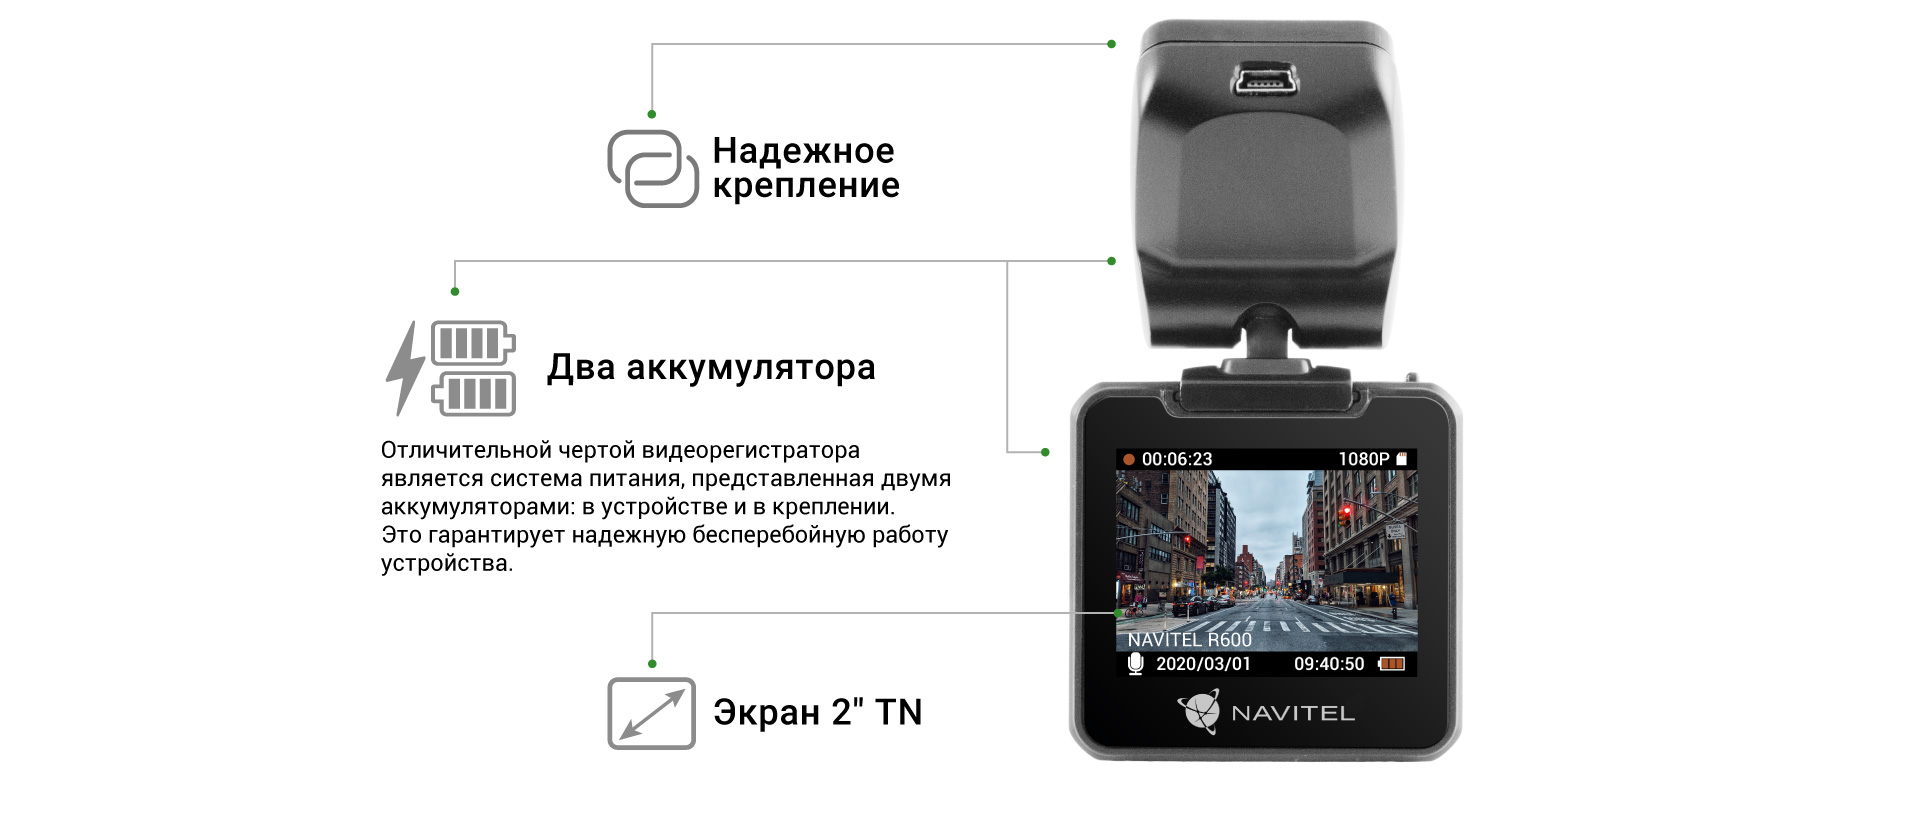 Обзор видеорегистратора с GPS и ночной съёмкой - Navitel R600 GPS